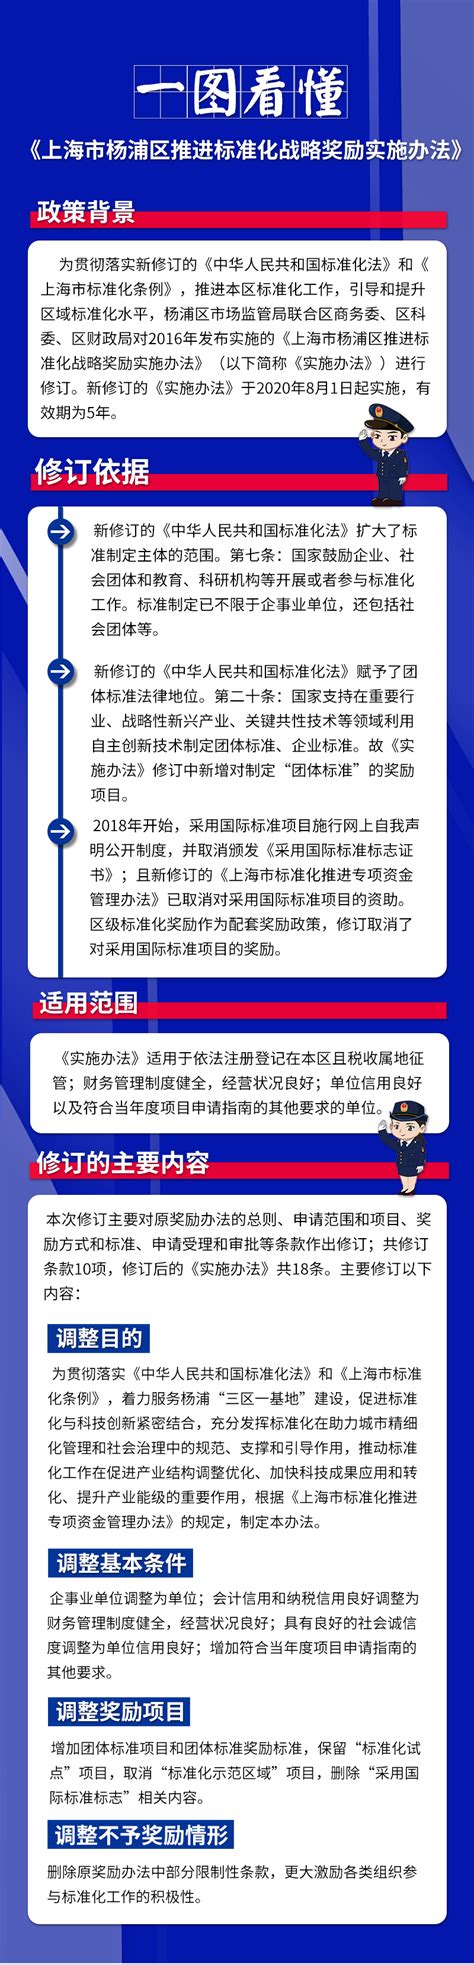 杨浦区推进标准化战略奖励实施办法_上海市杨浦区人民政府